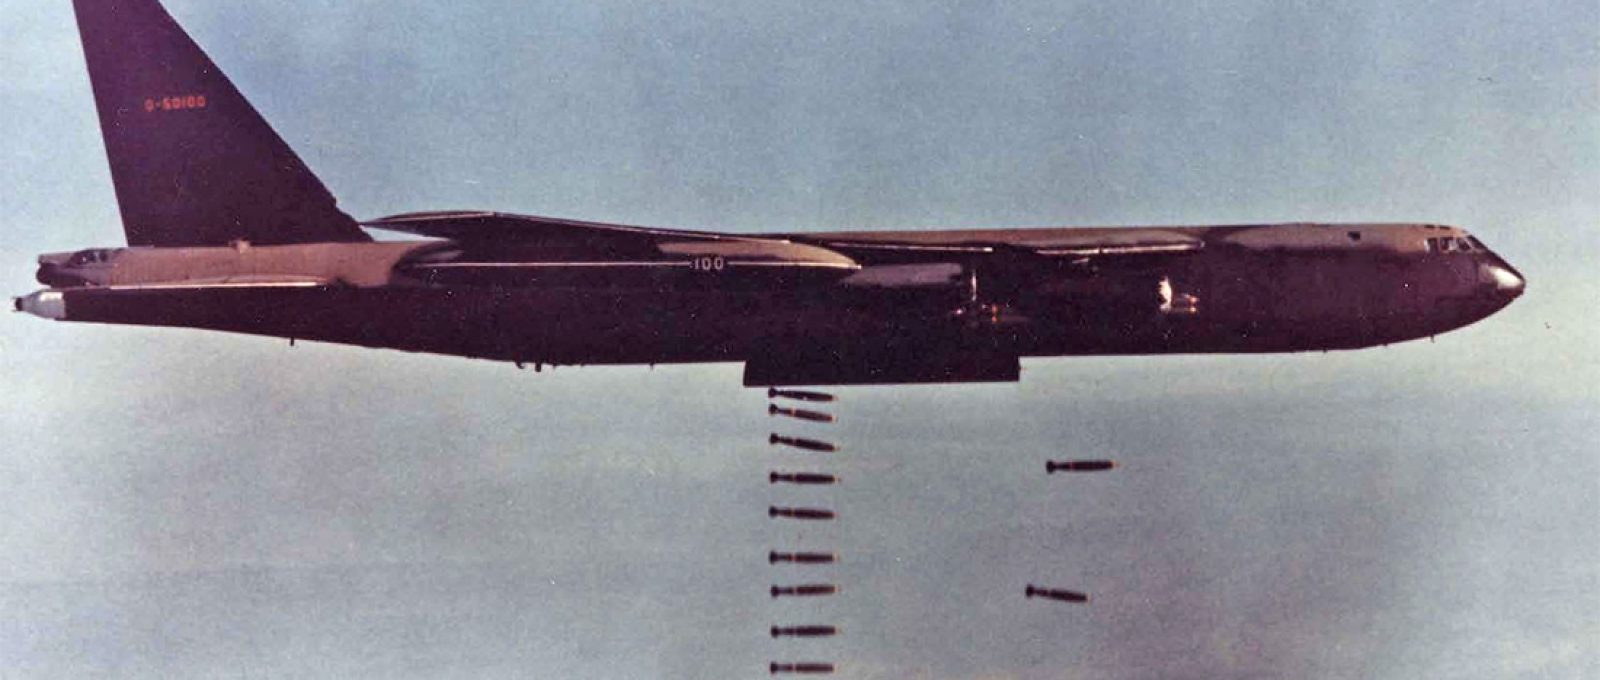 B-52 em missão de bombardeio durante a Operação Linebacker (U.S. Air Force Historical Support Division).